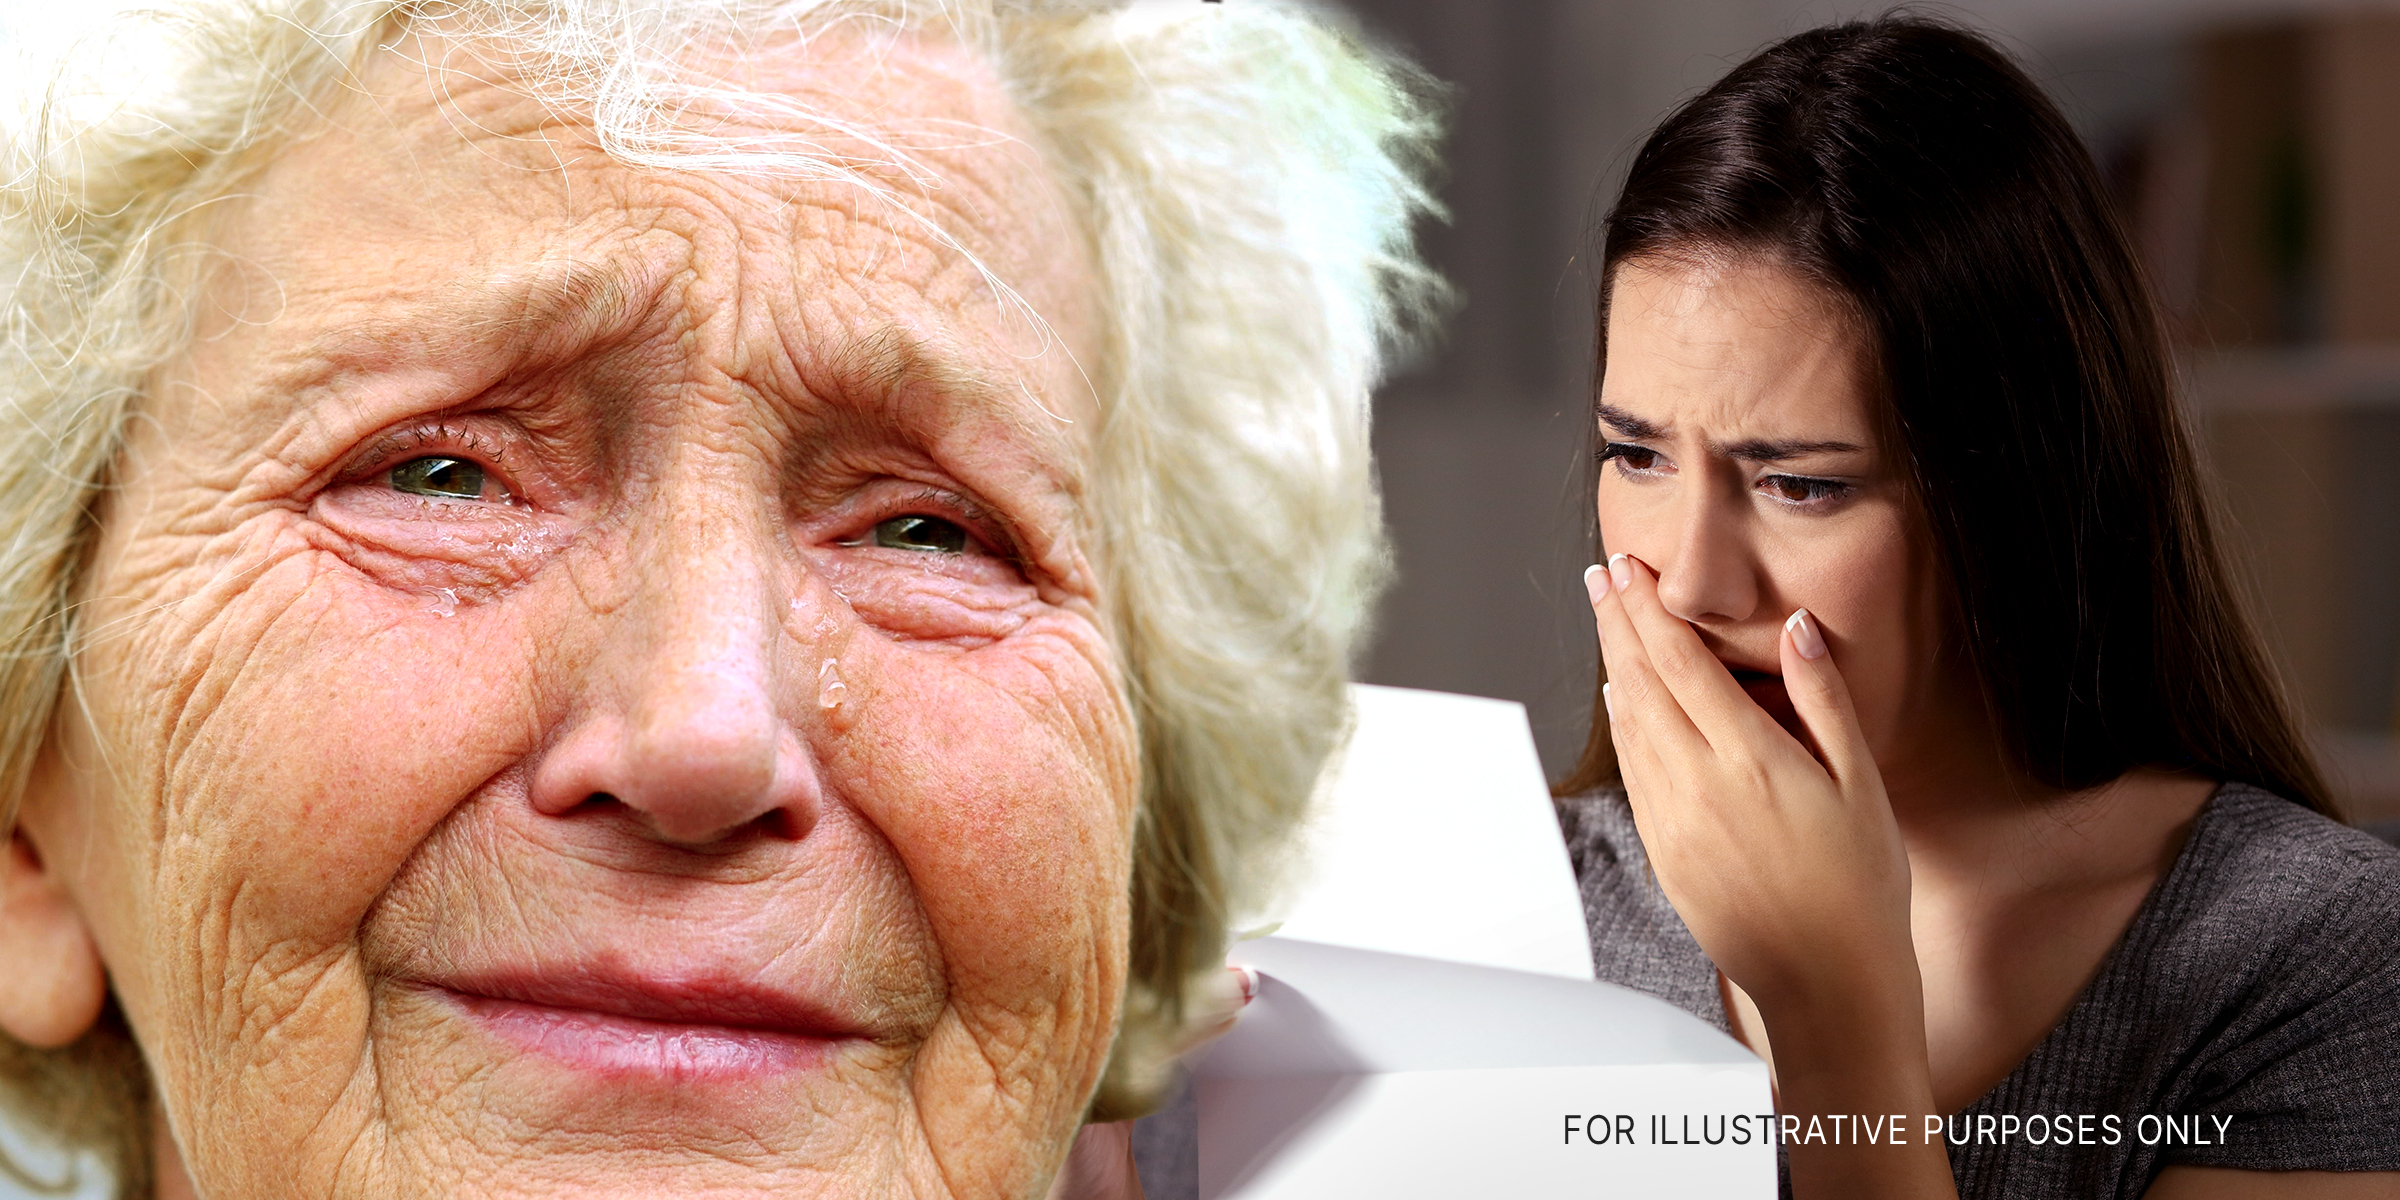 Crying women | Source: Shutterstock